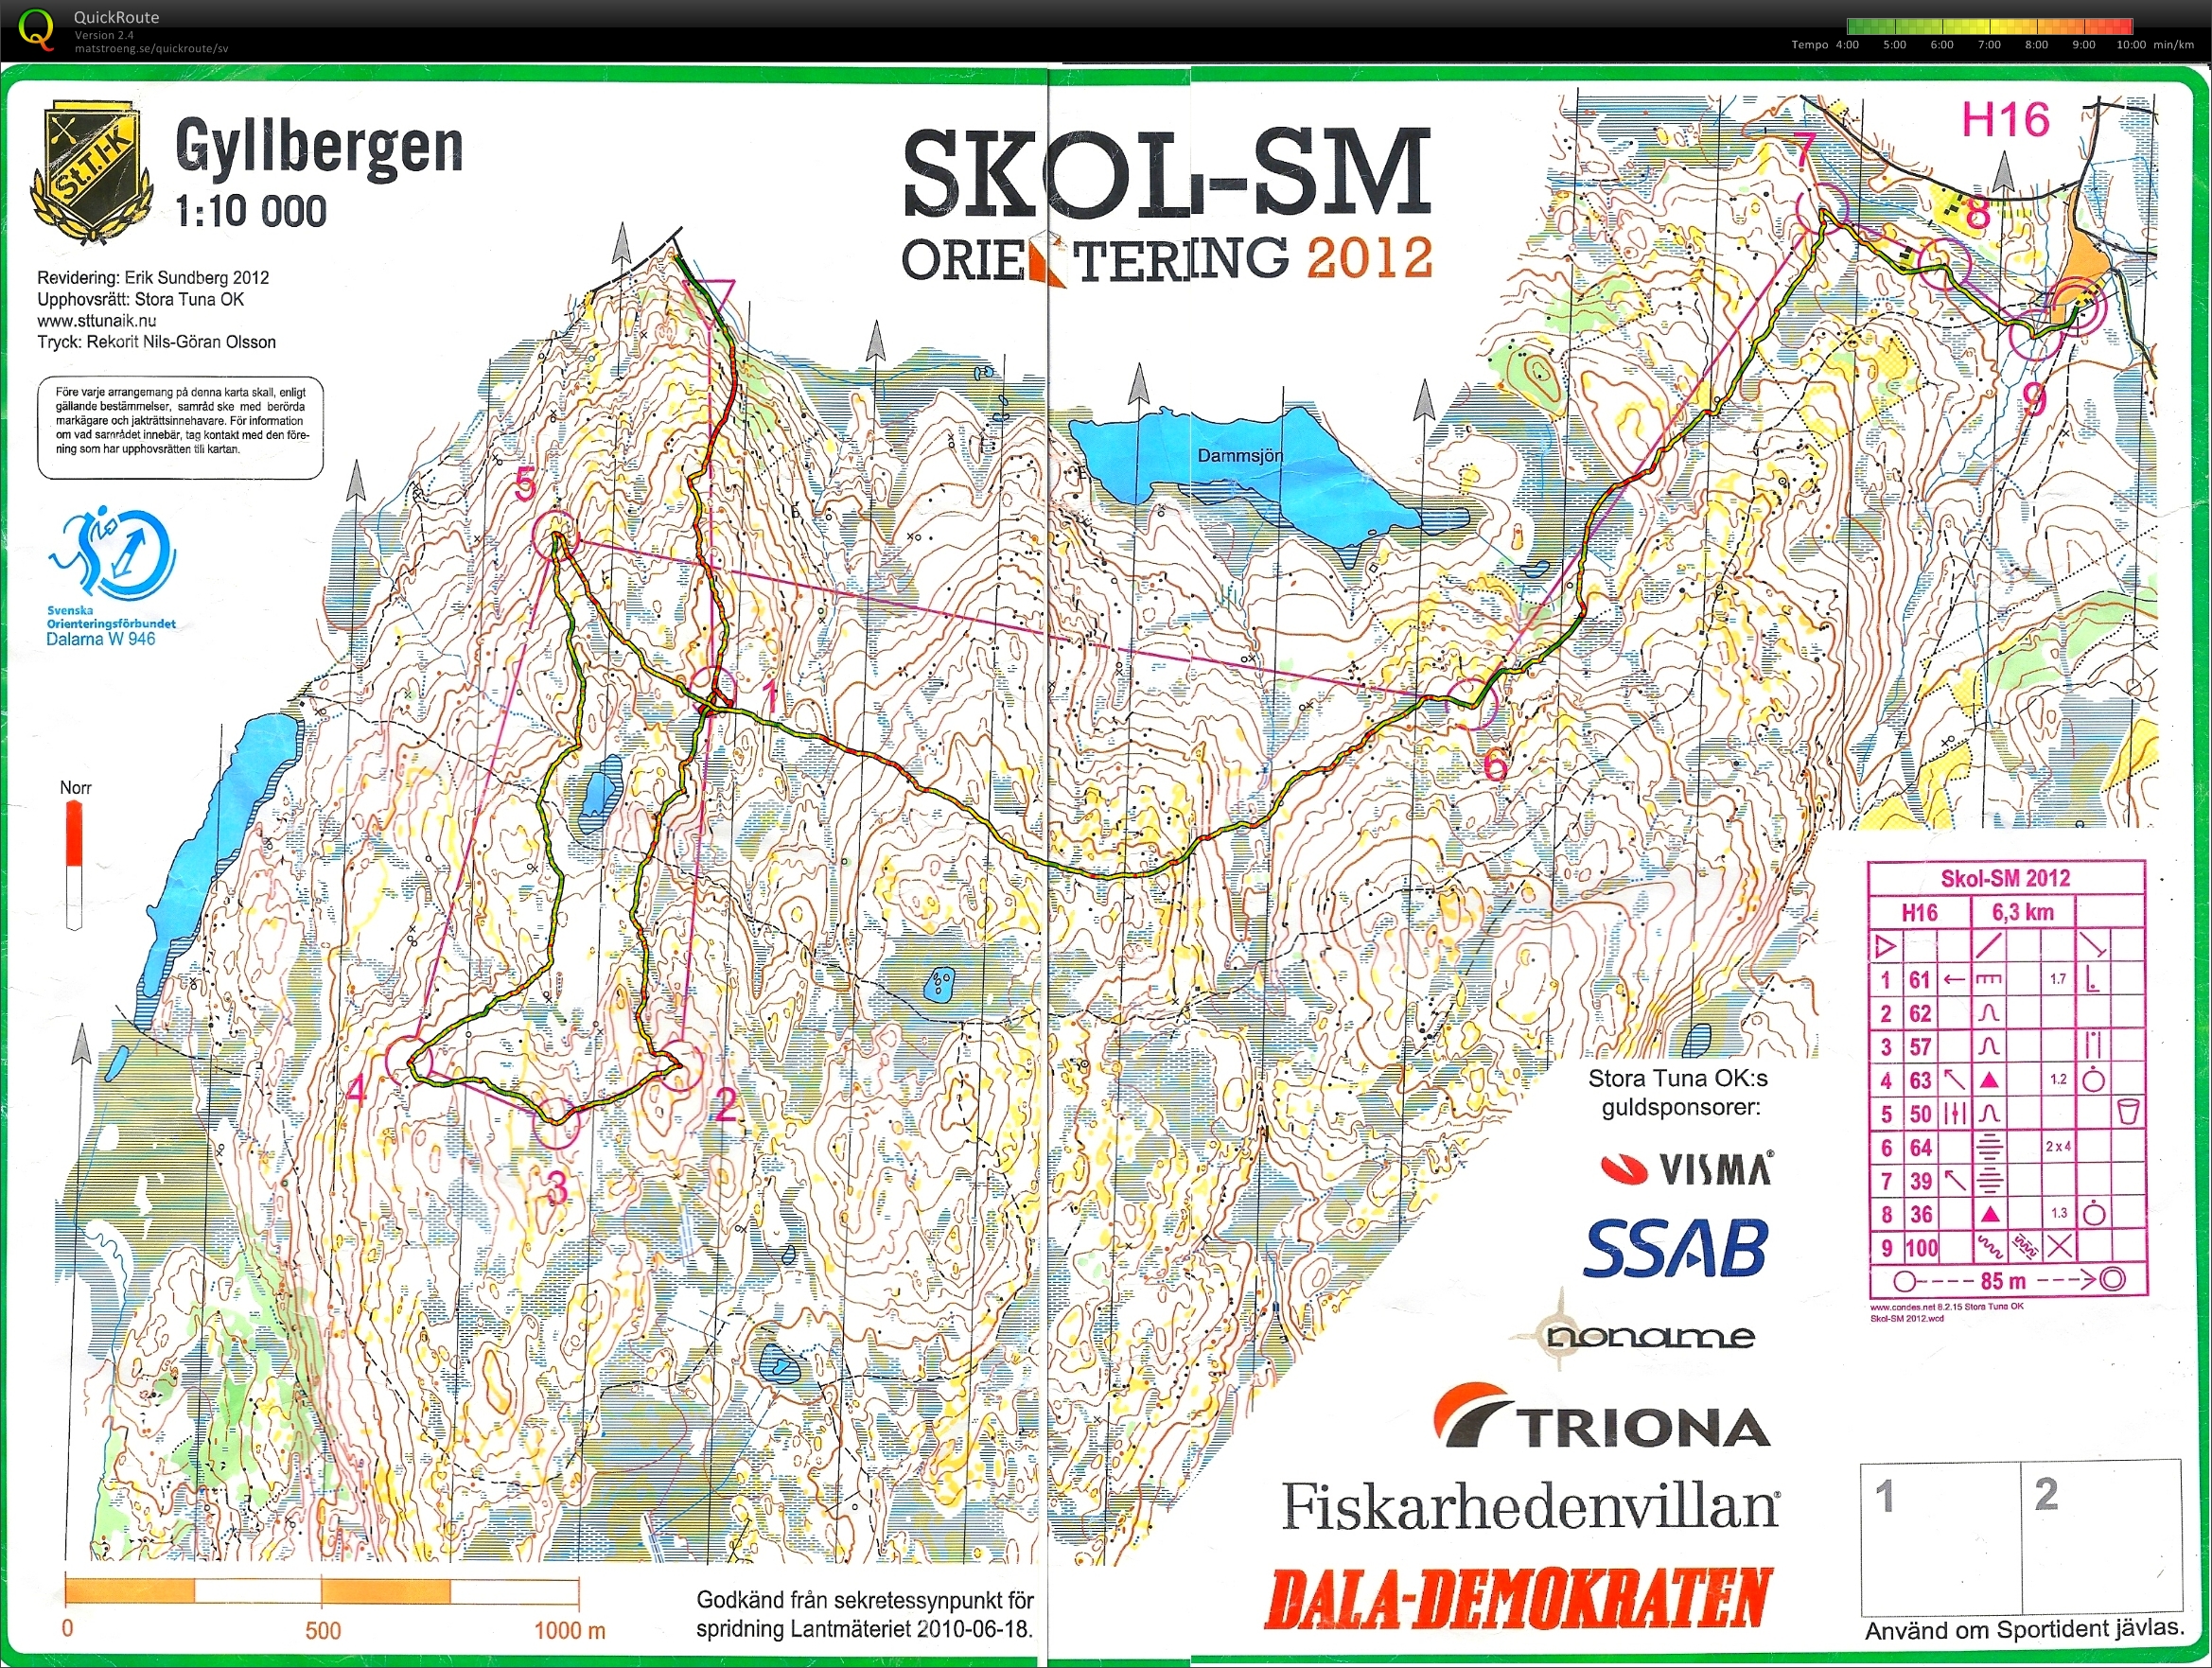 Skol SM lång (2012-10-20) (26/01/2015)